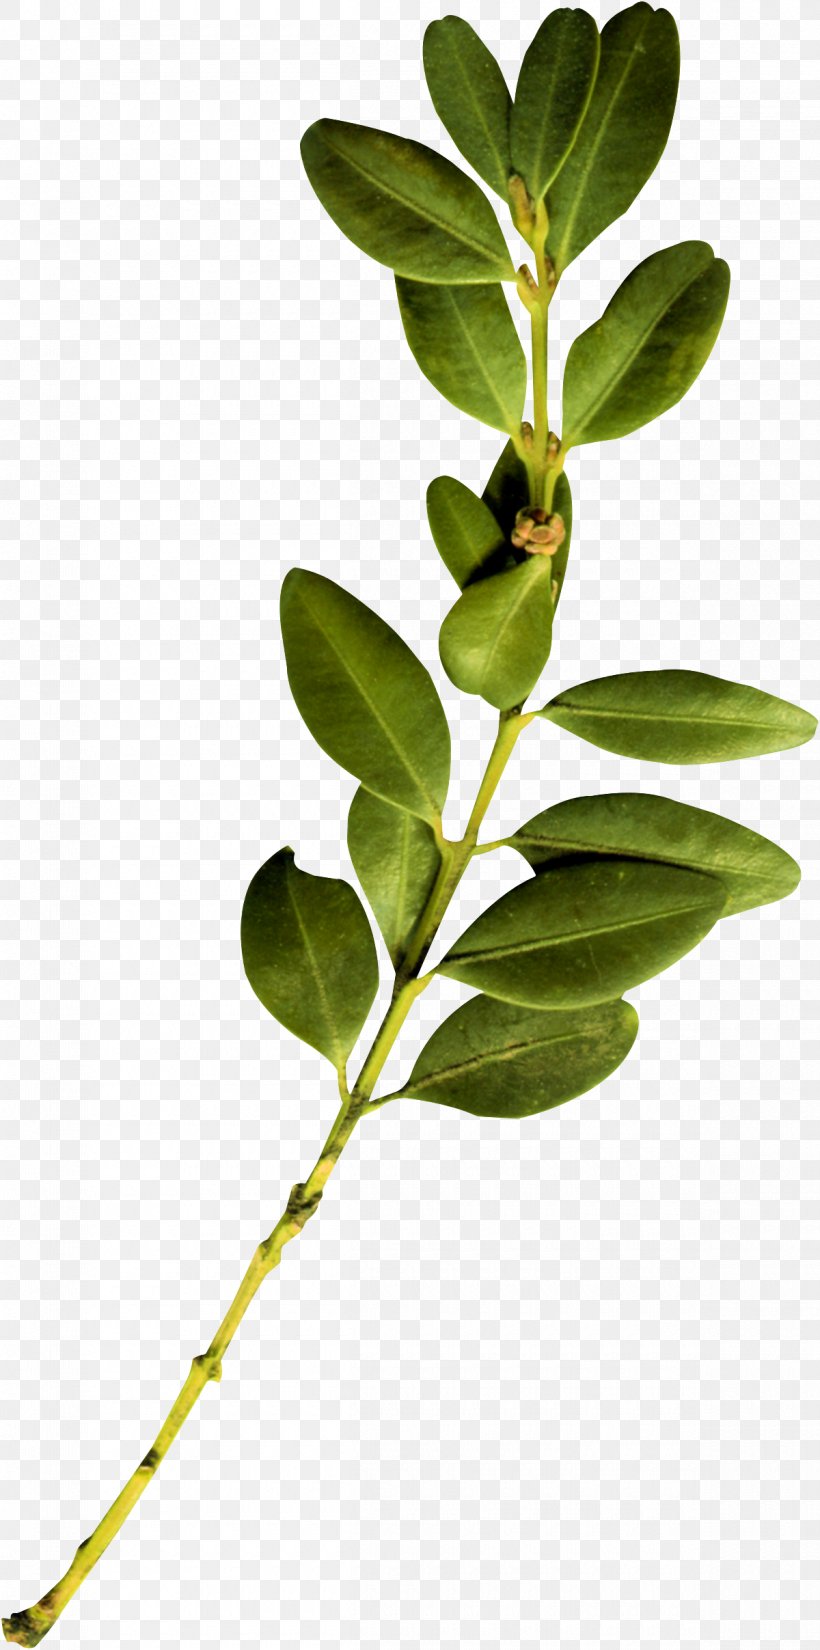 Twig Plant Stem Leaf, PNG, 1200x2415px, Twig, Branch, Leaf, Plant, Plant Stem Download Free